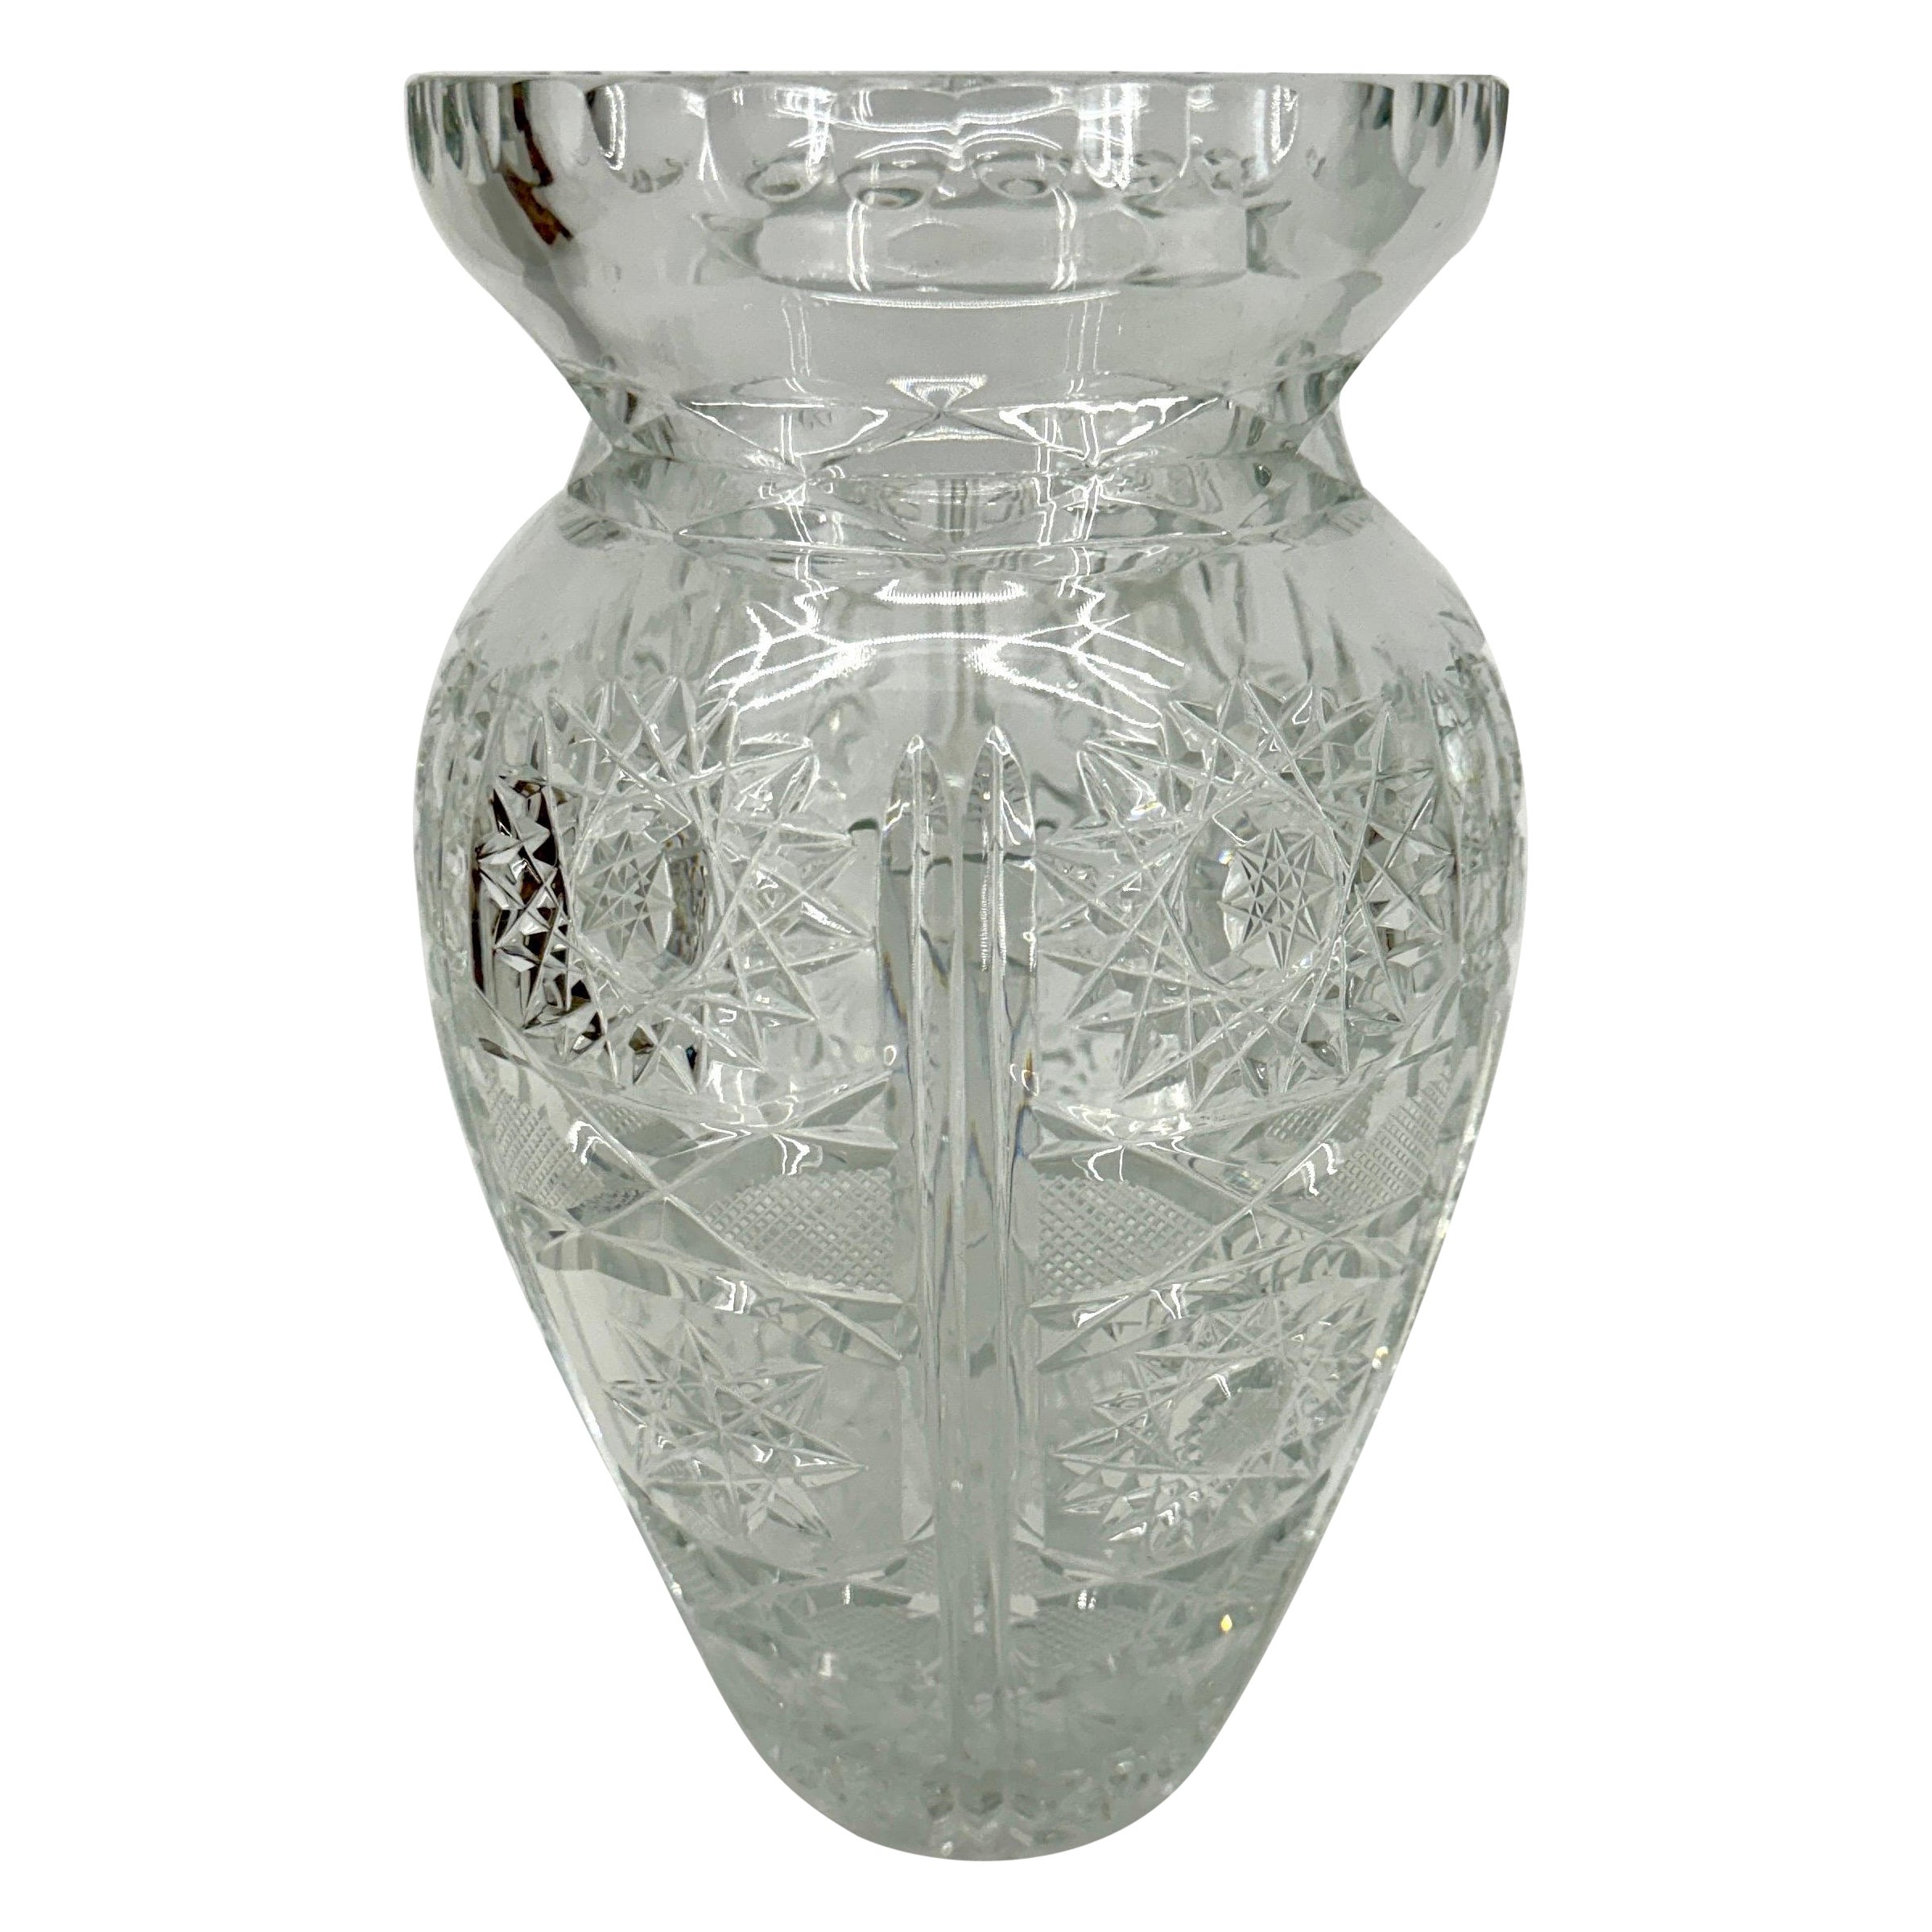 Crystal Centerpiece Vase, Circa 1950's American